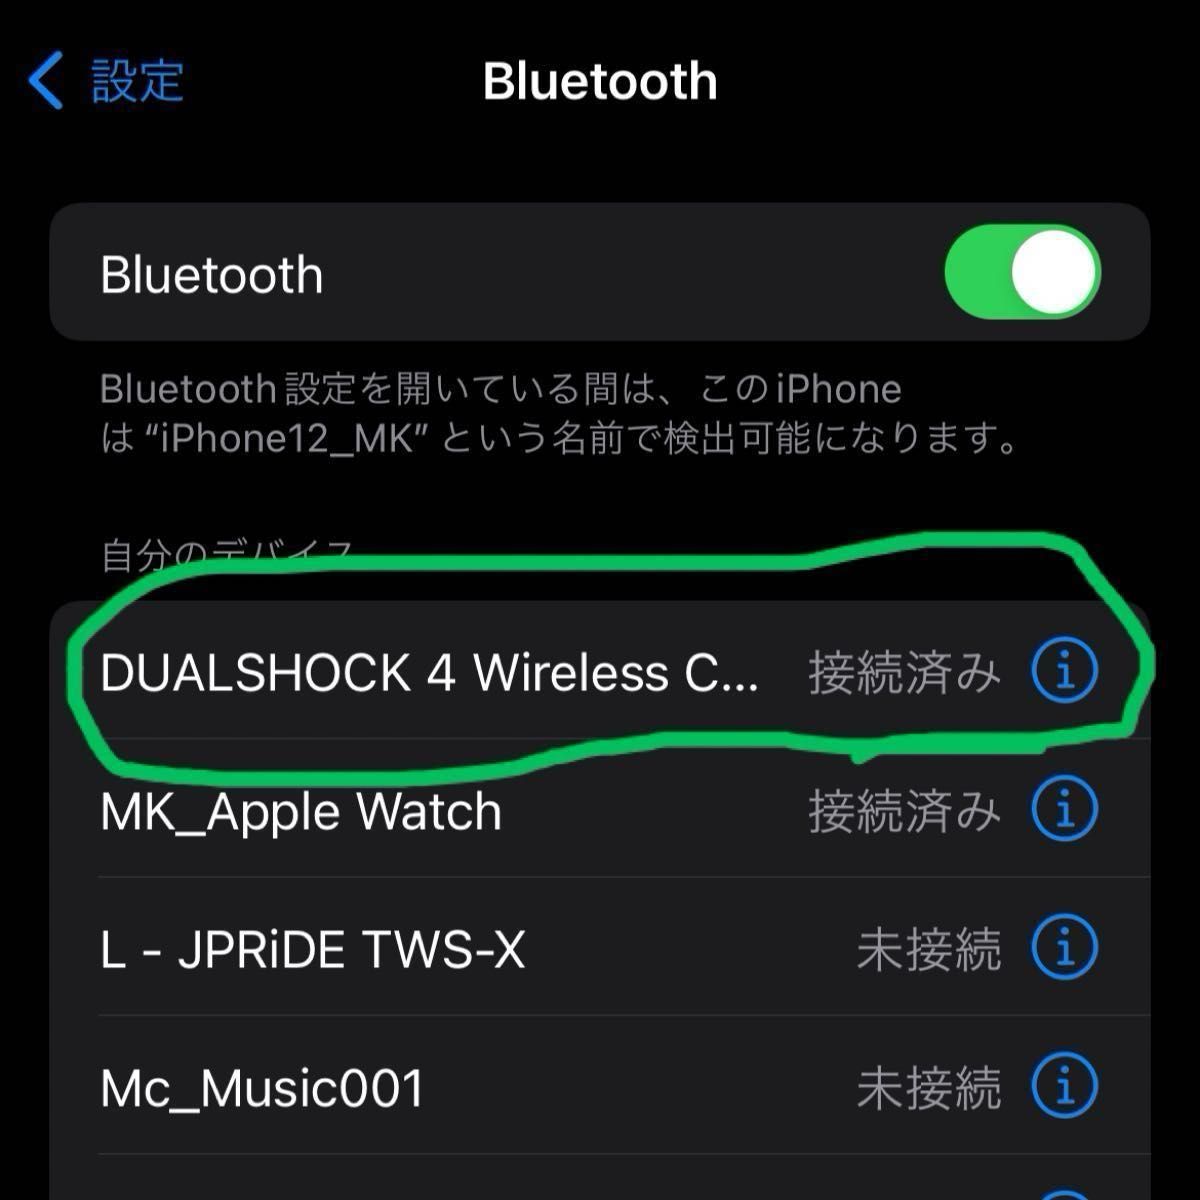 超美品 ワイヤレスコントローラー Bluetooth Android Windows PUBG/COD/原神 PS4 22